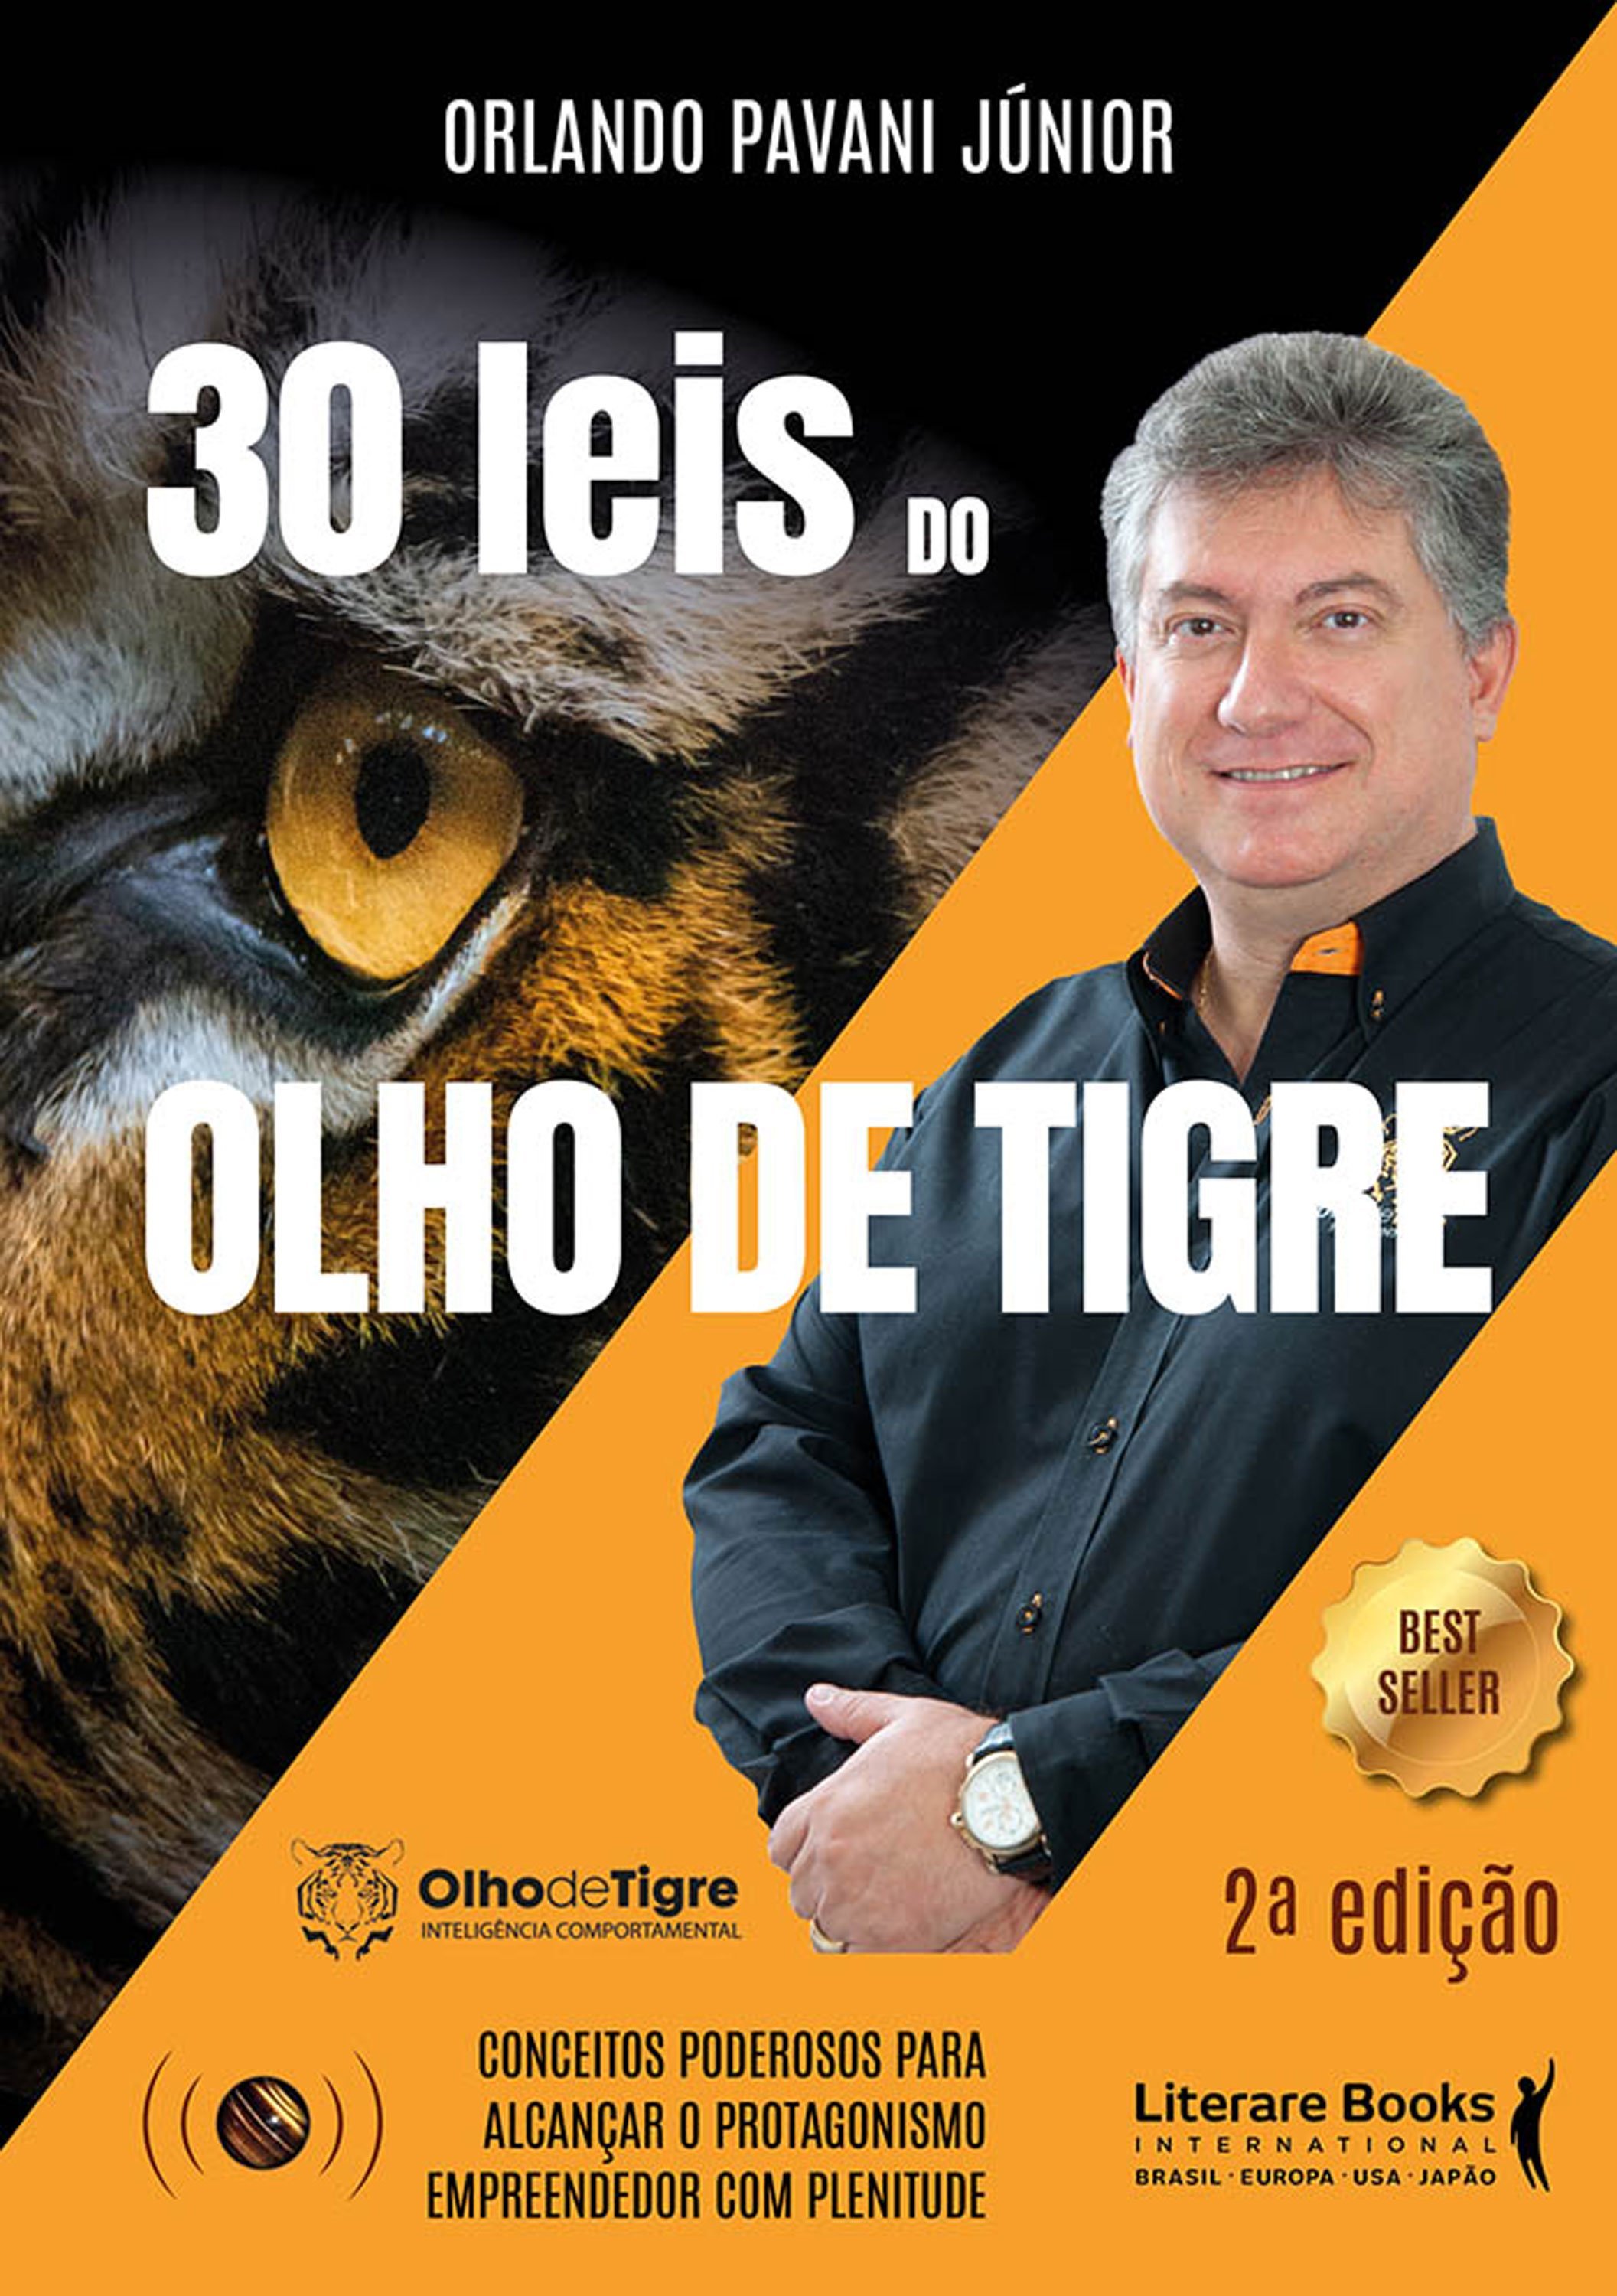 30 Leis do Olho de Tigre